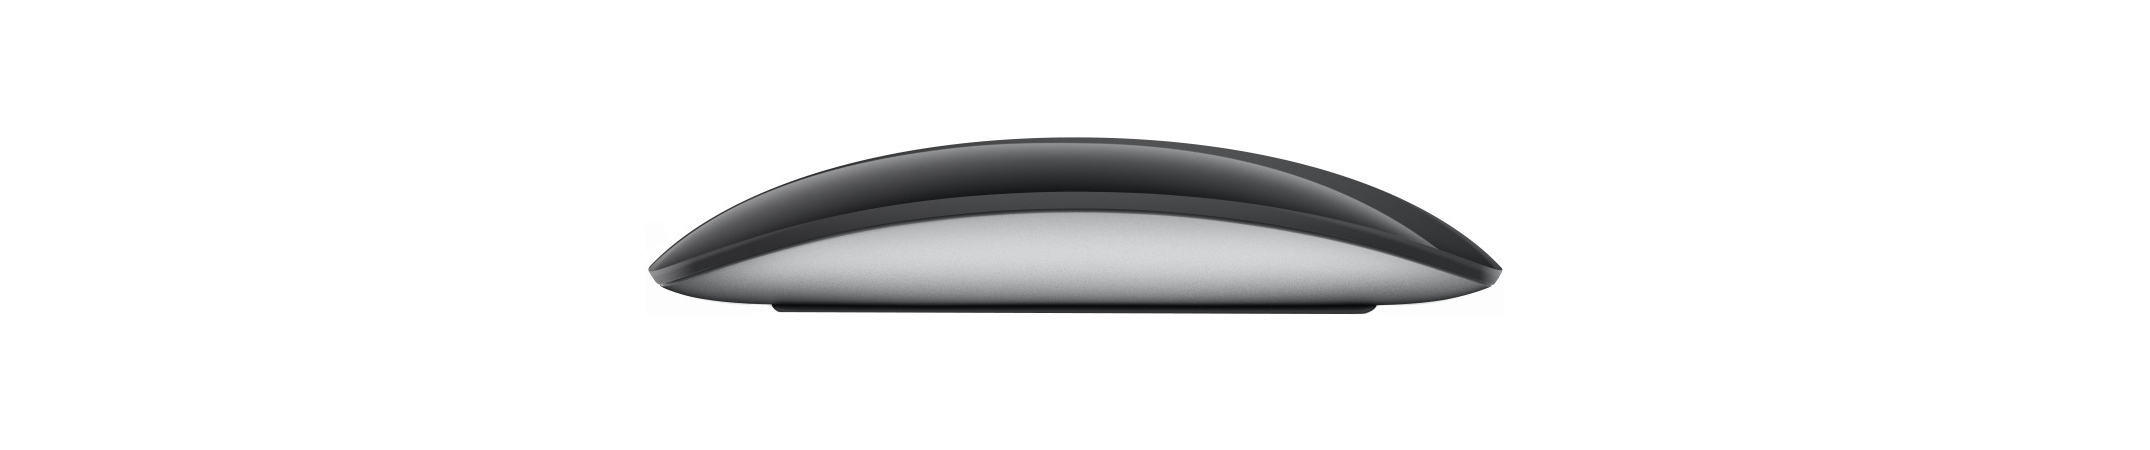 Apple Magic Mouse 3 Black, Цвет: Black / Черный, изображение 4